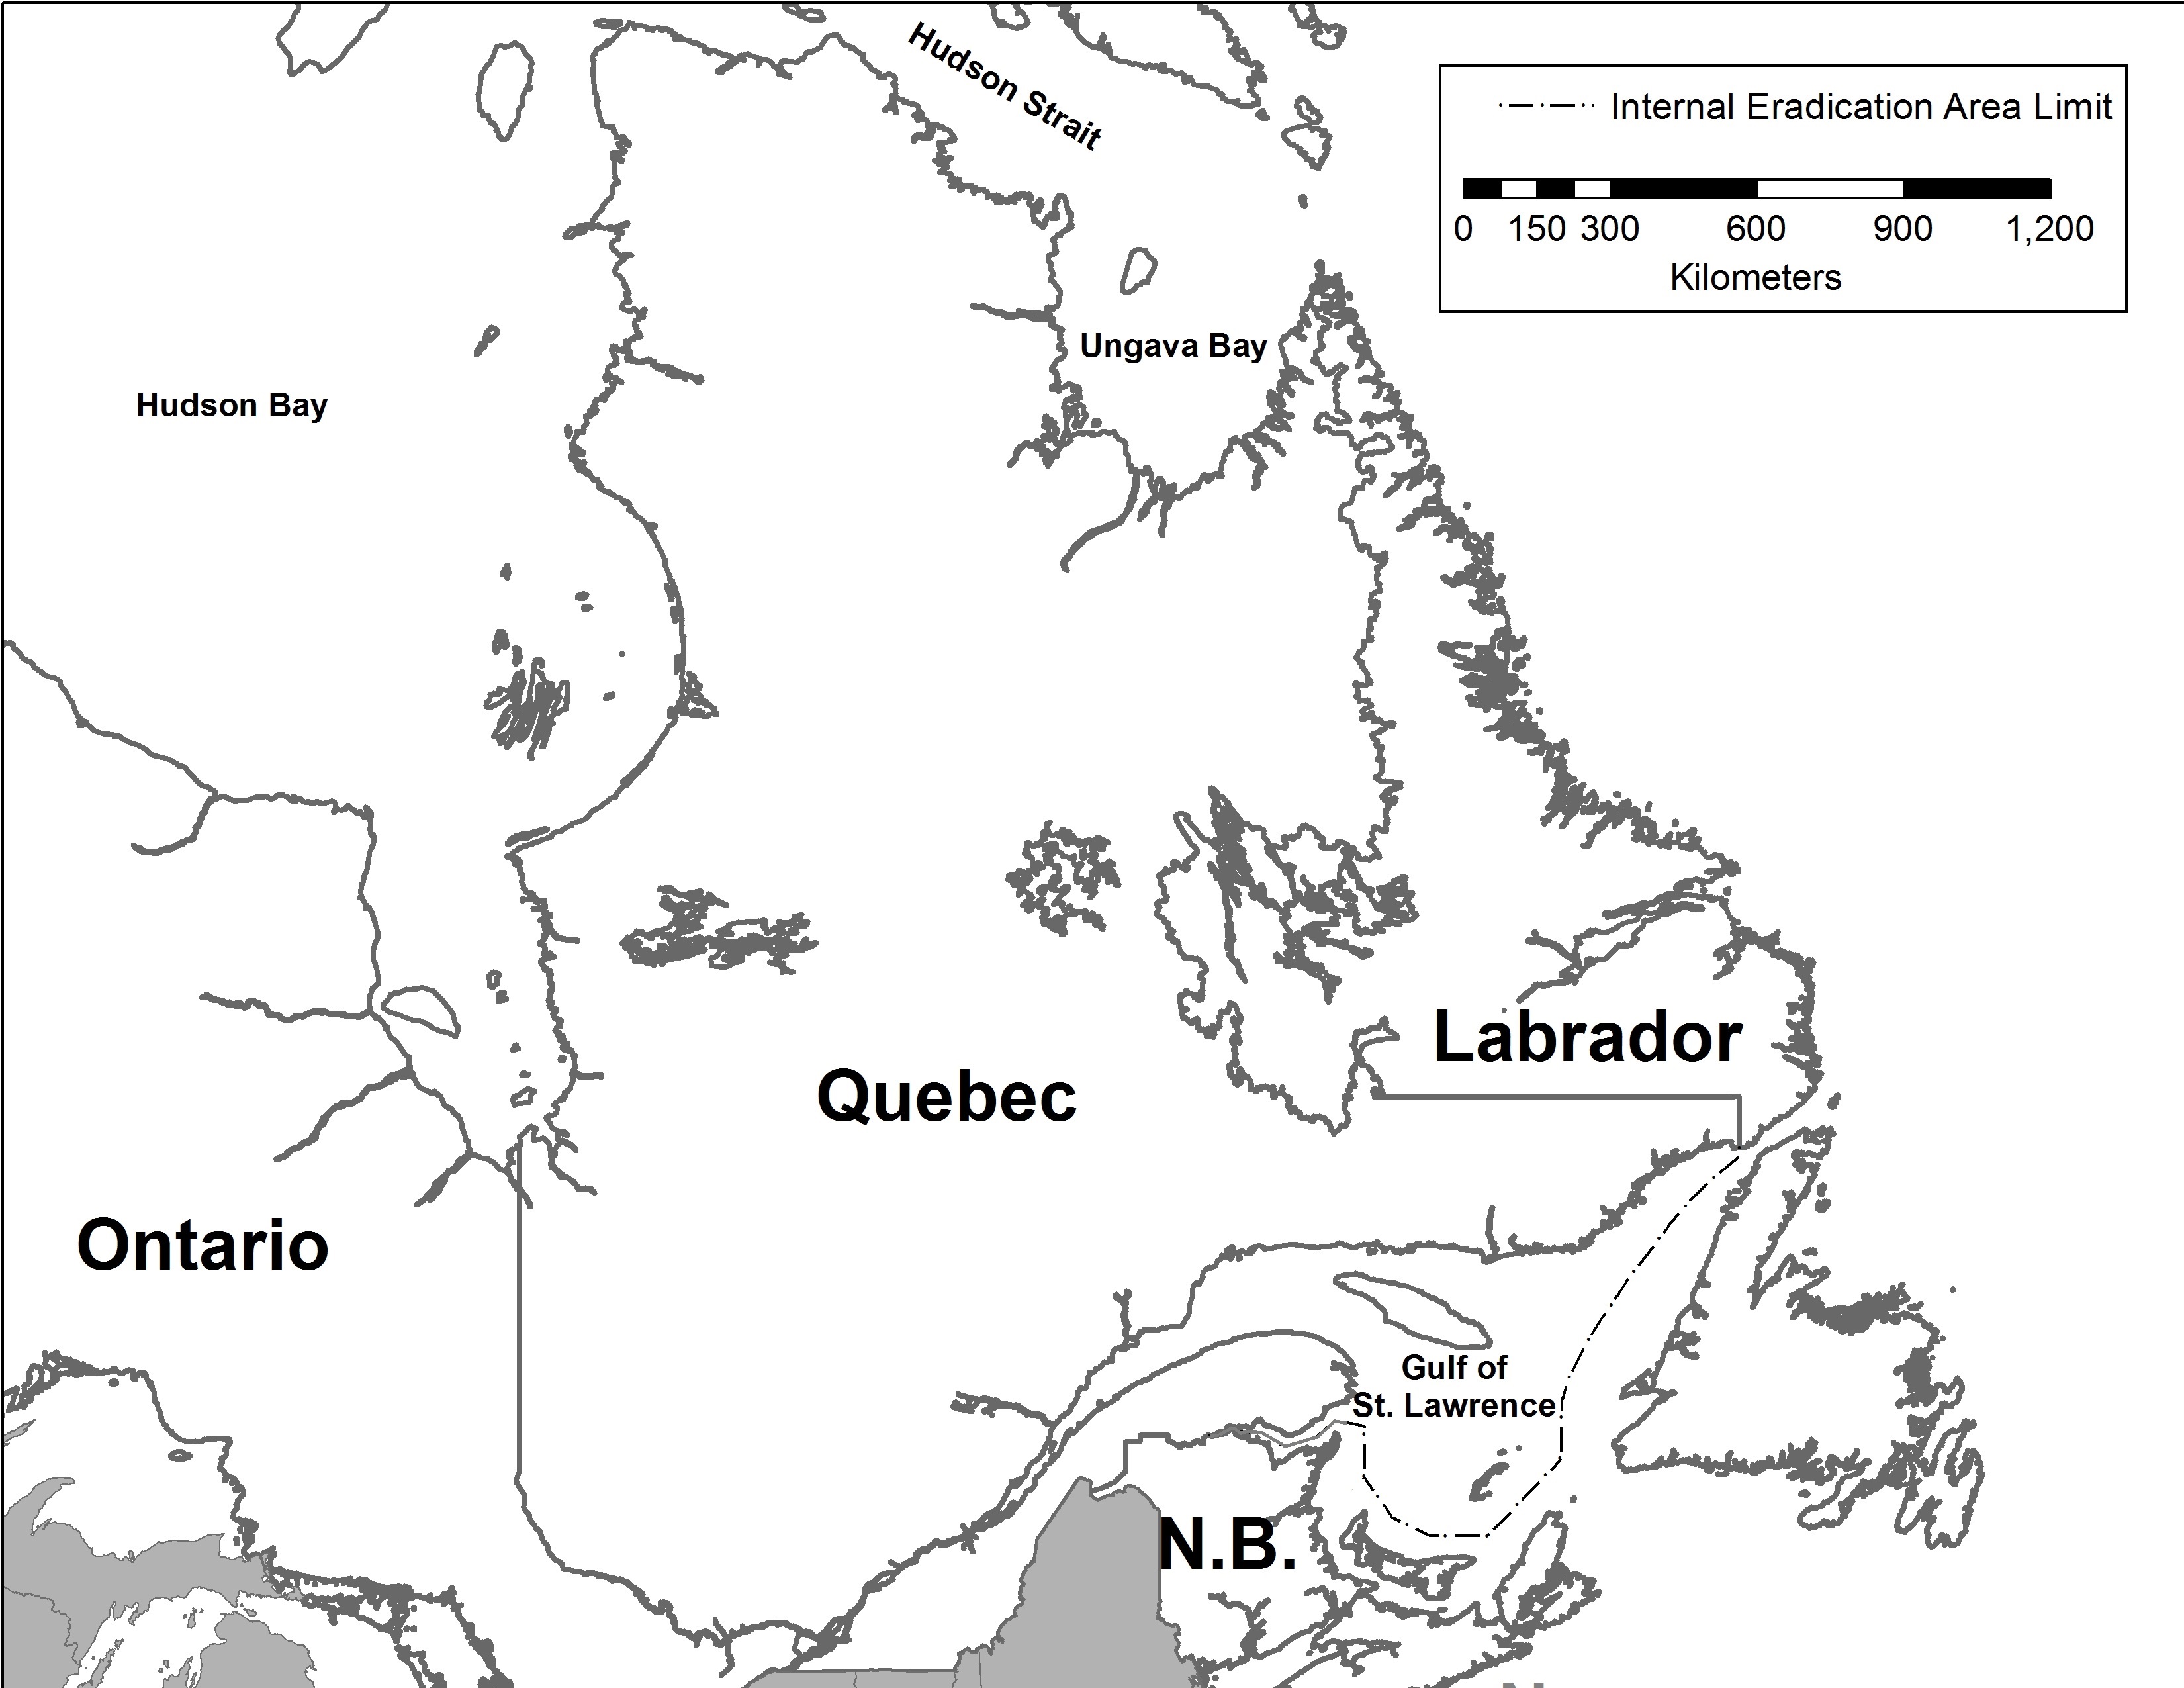 Quebec map. Description follows.